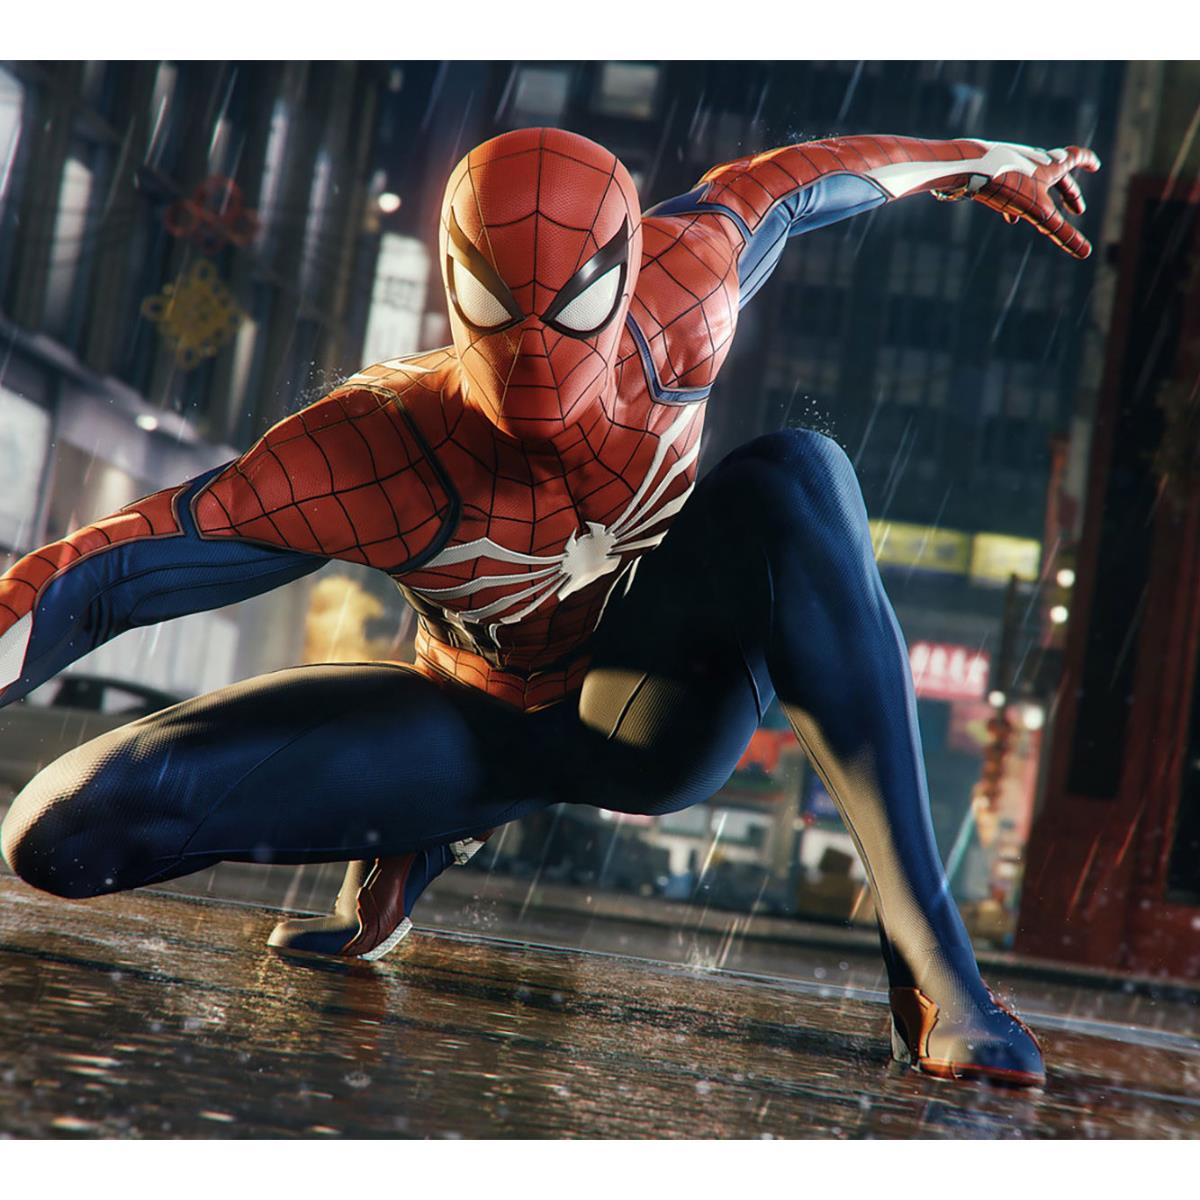 Marvel's Spider-Man Remastered já Disponível para PC com NVIDIA DLSS, DLAA,  Ray Tracing e Muito Mais, Notícias GeForce